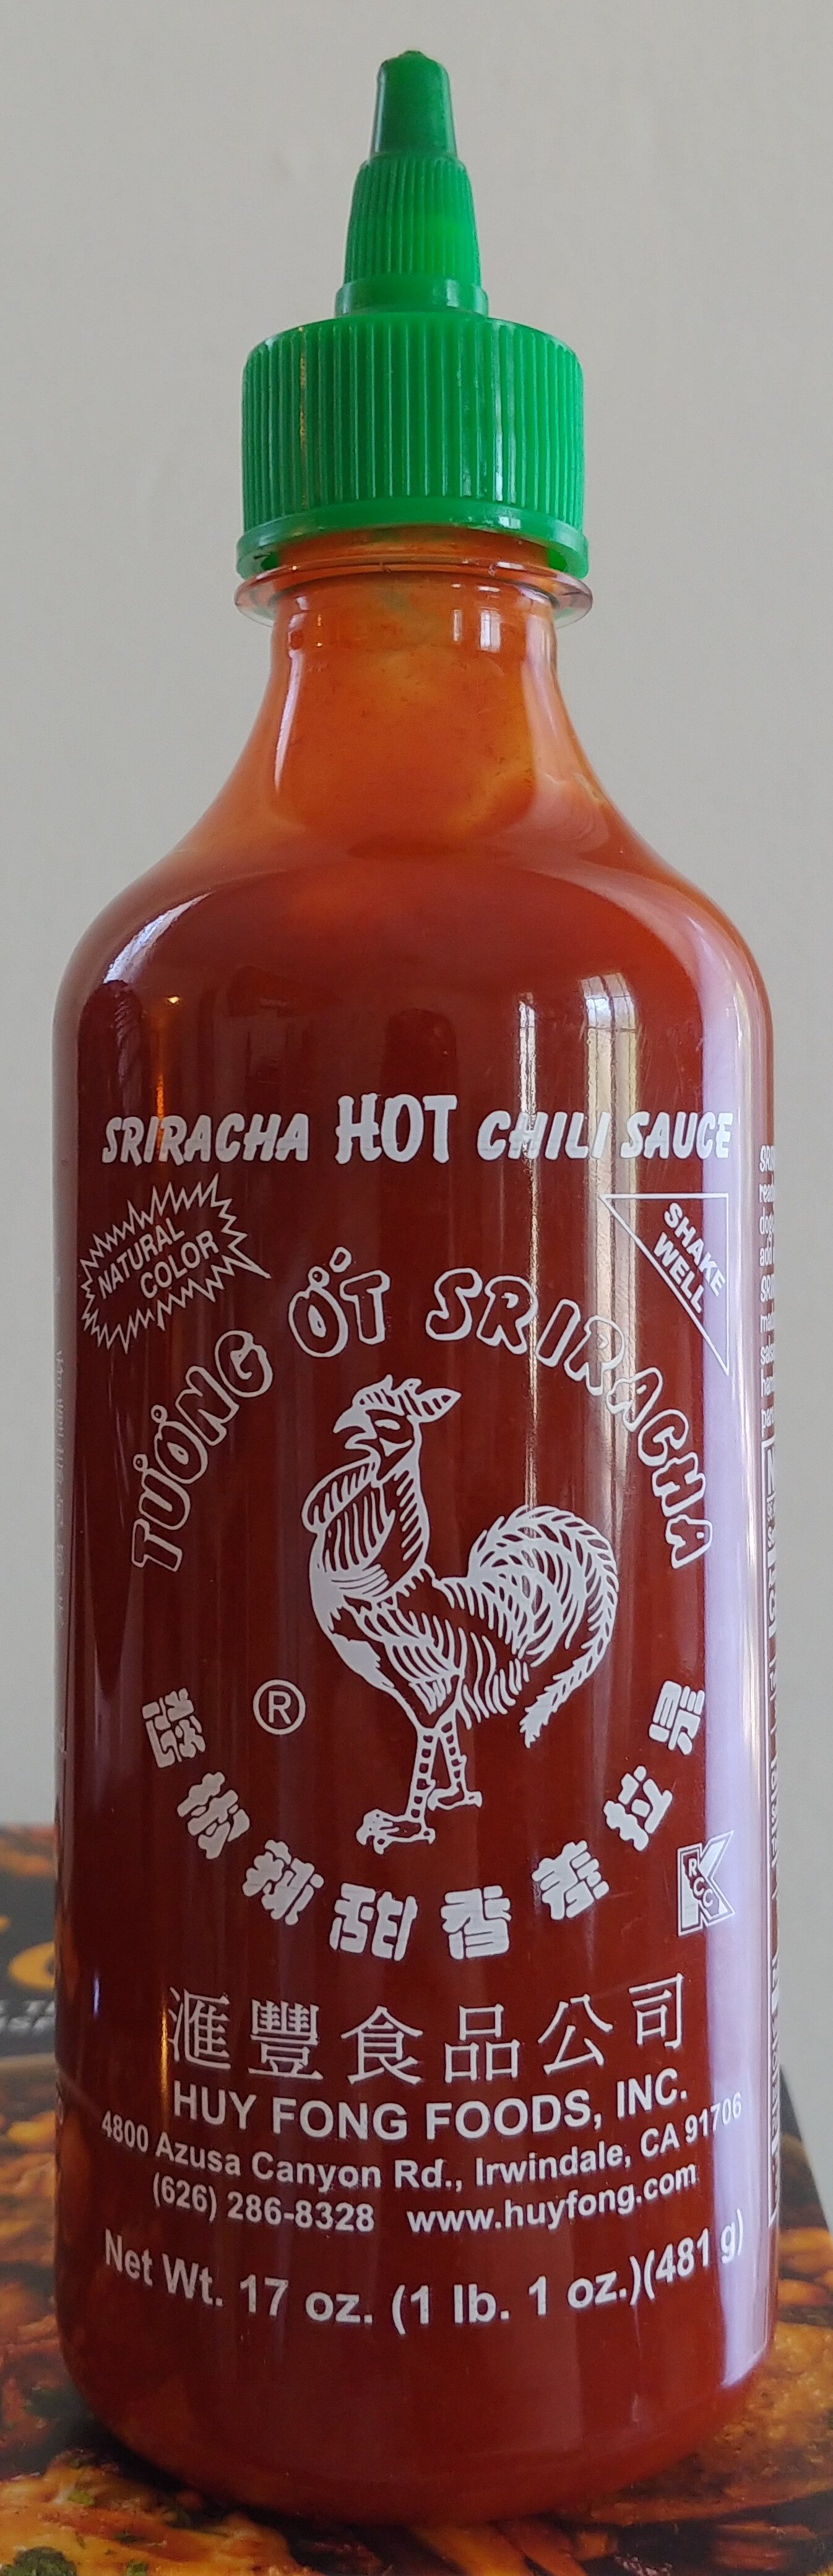 Sriracha Hot Chili Sauce - Produkt - en